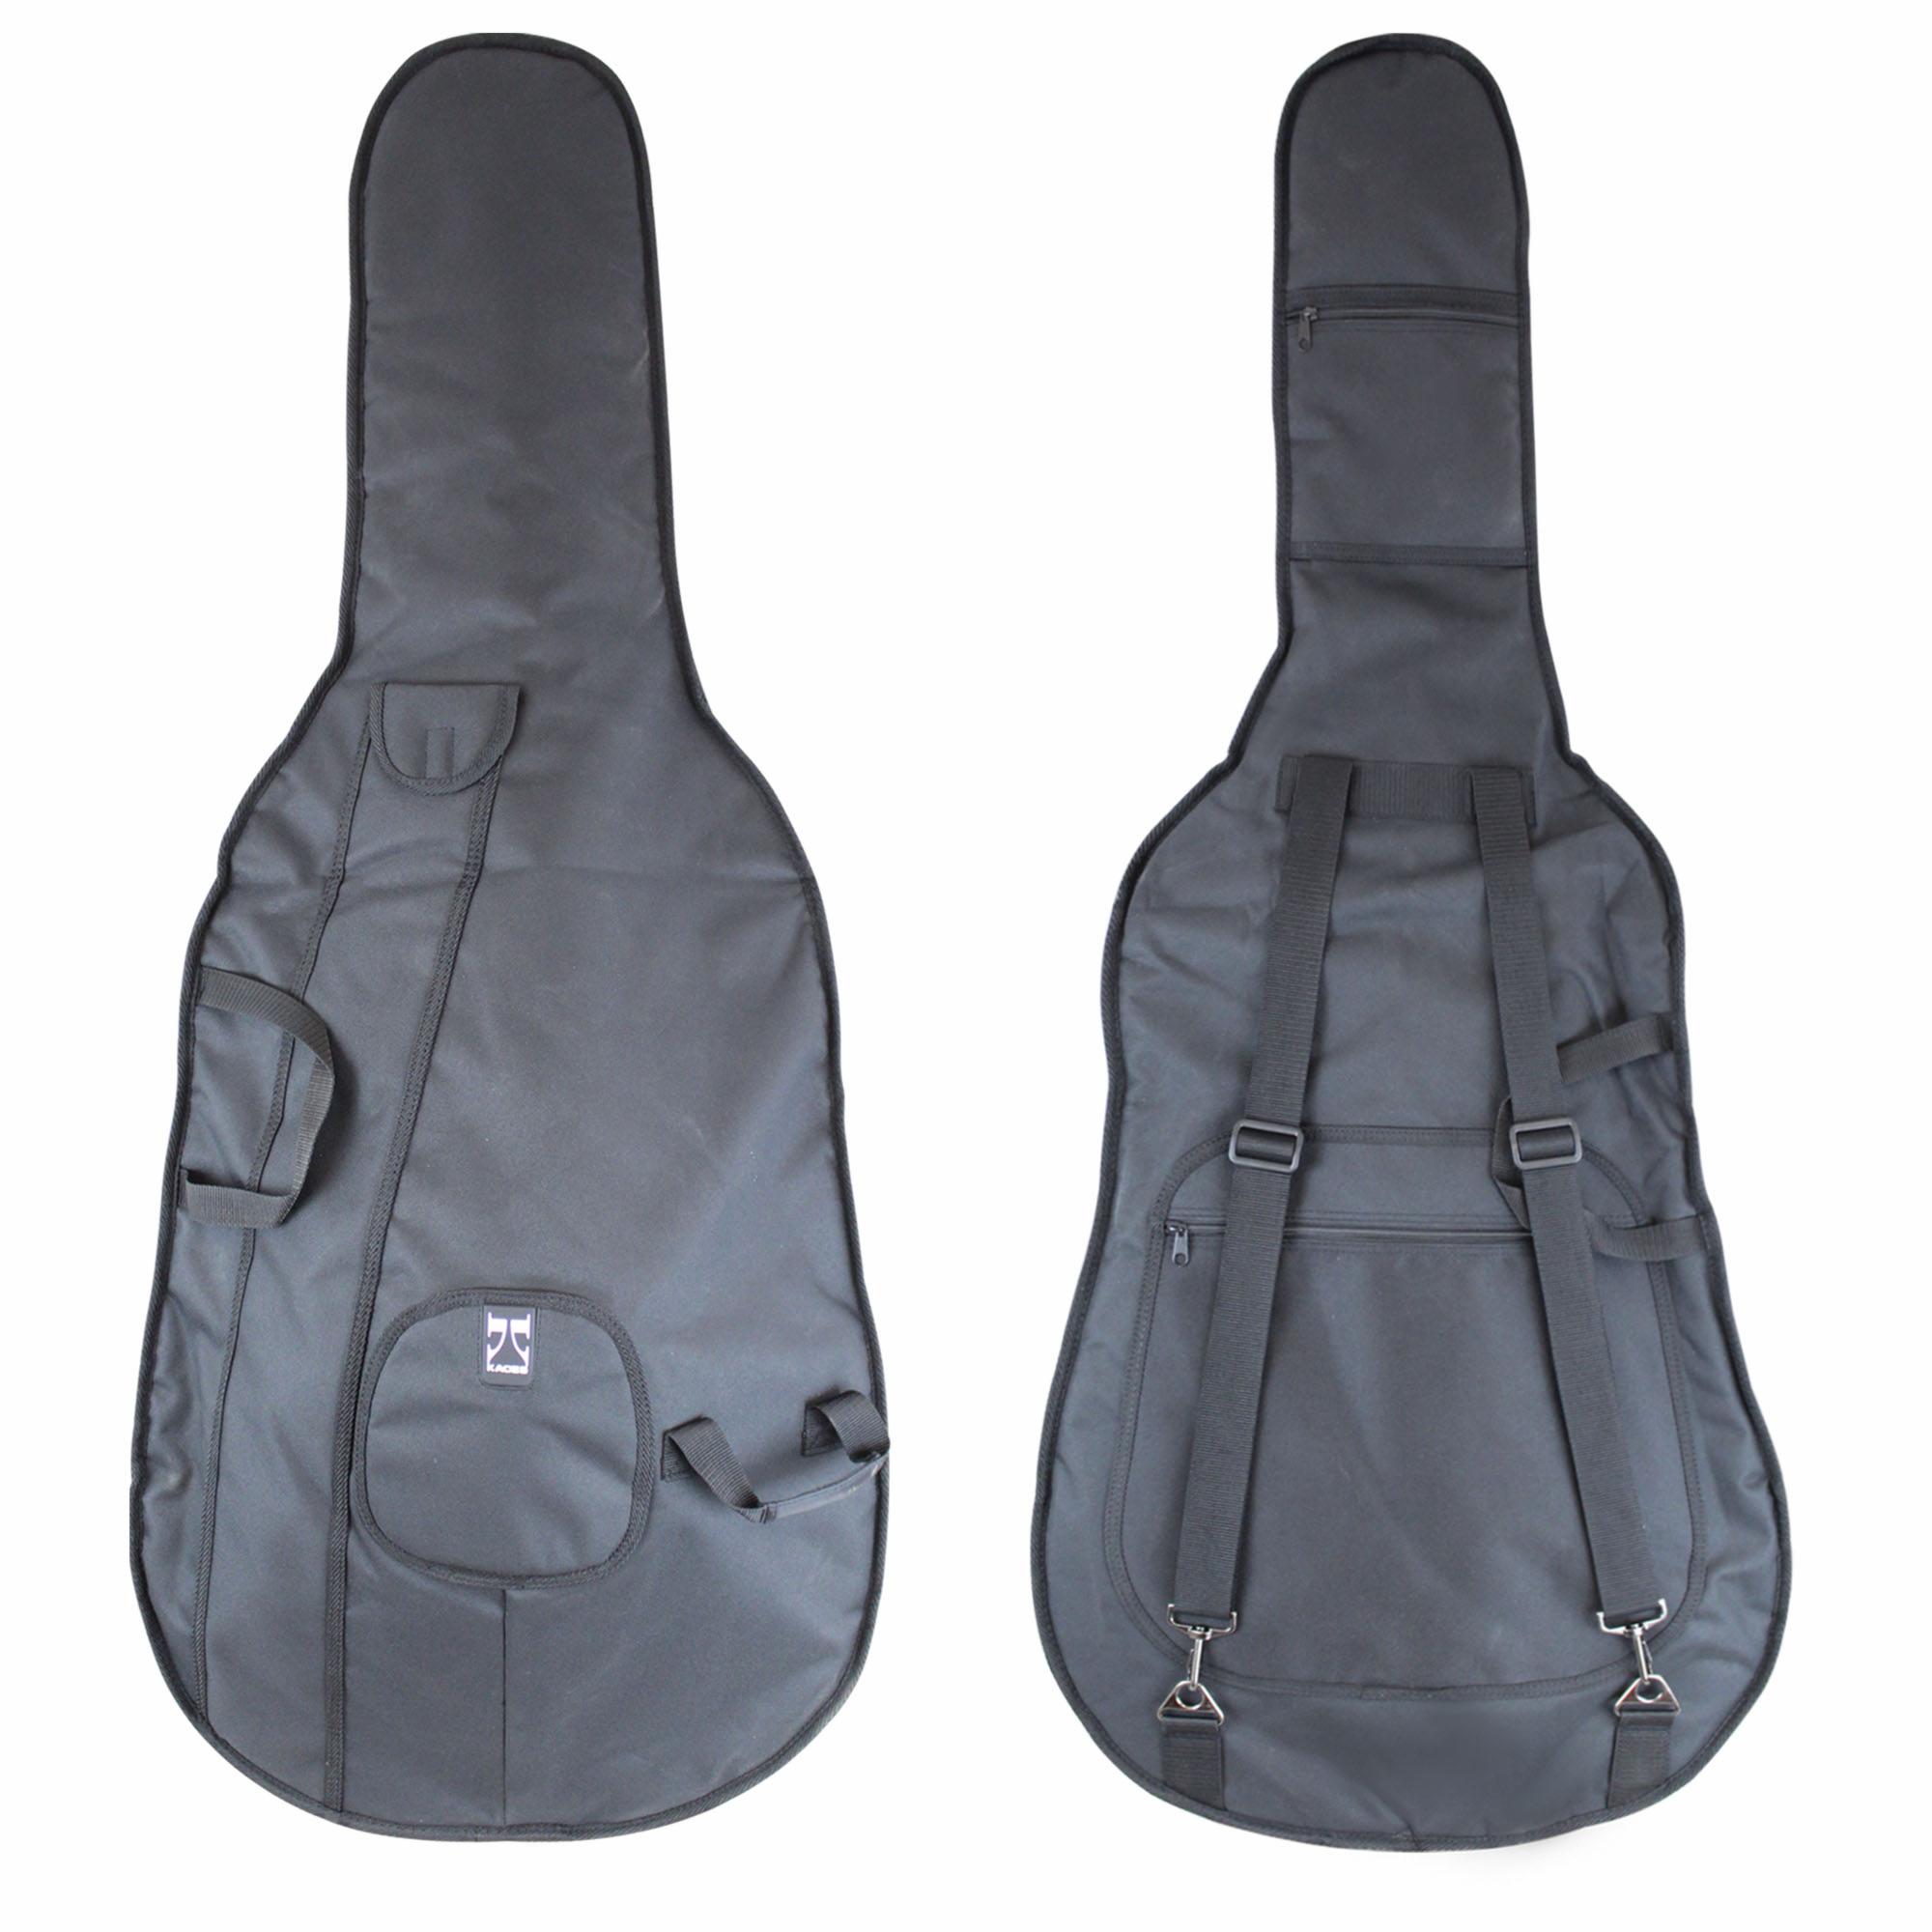 Kaces University Deluxe Cello Bag 12mm 